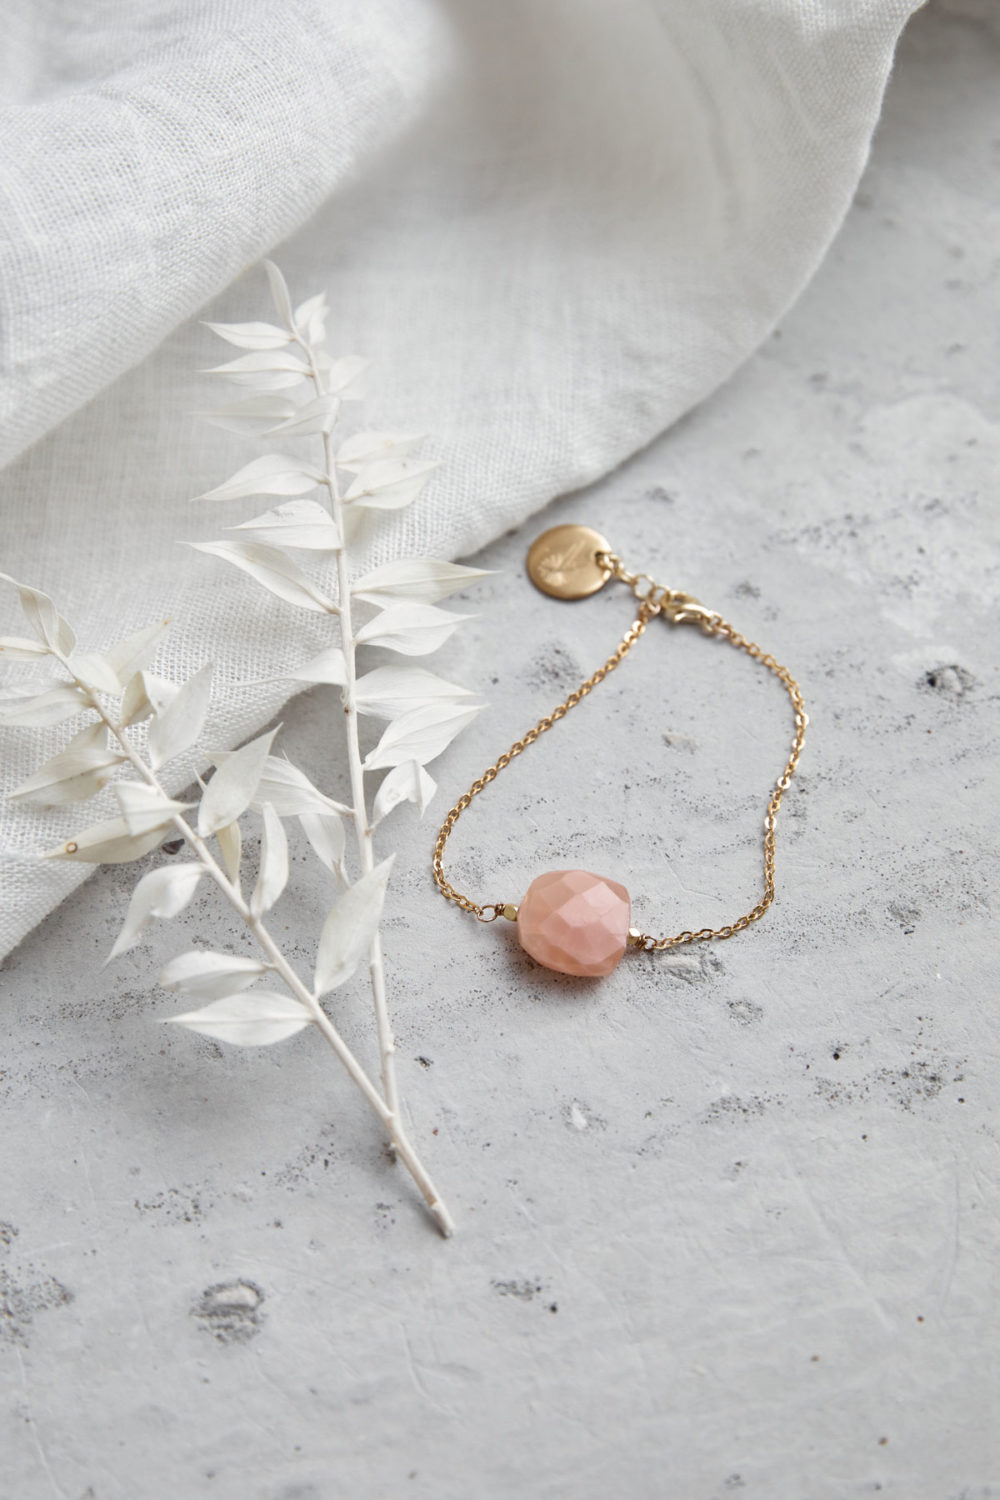 PAUKAA Armband gold mit Mondstein rosé und goldenem NAIONA Plättchen und Perlen. Trockenblumen, Tuch.